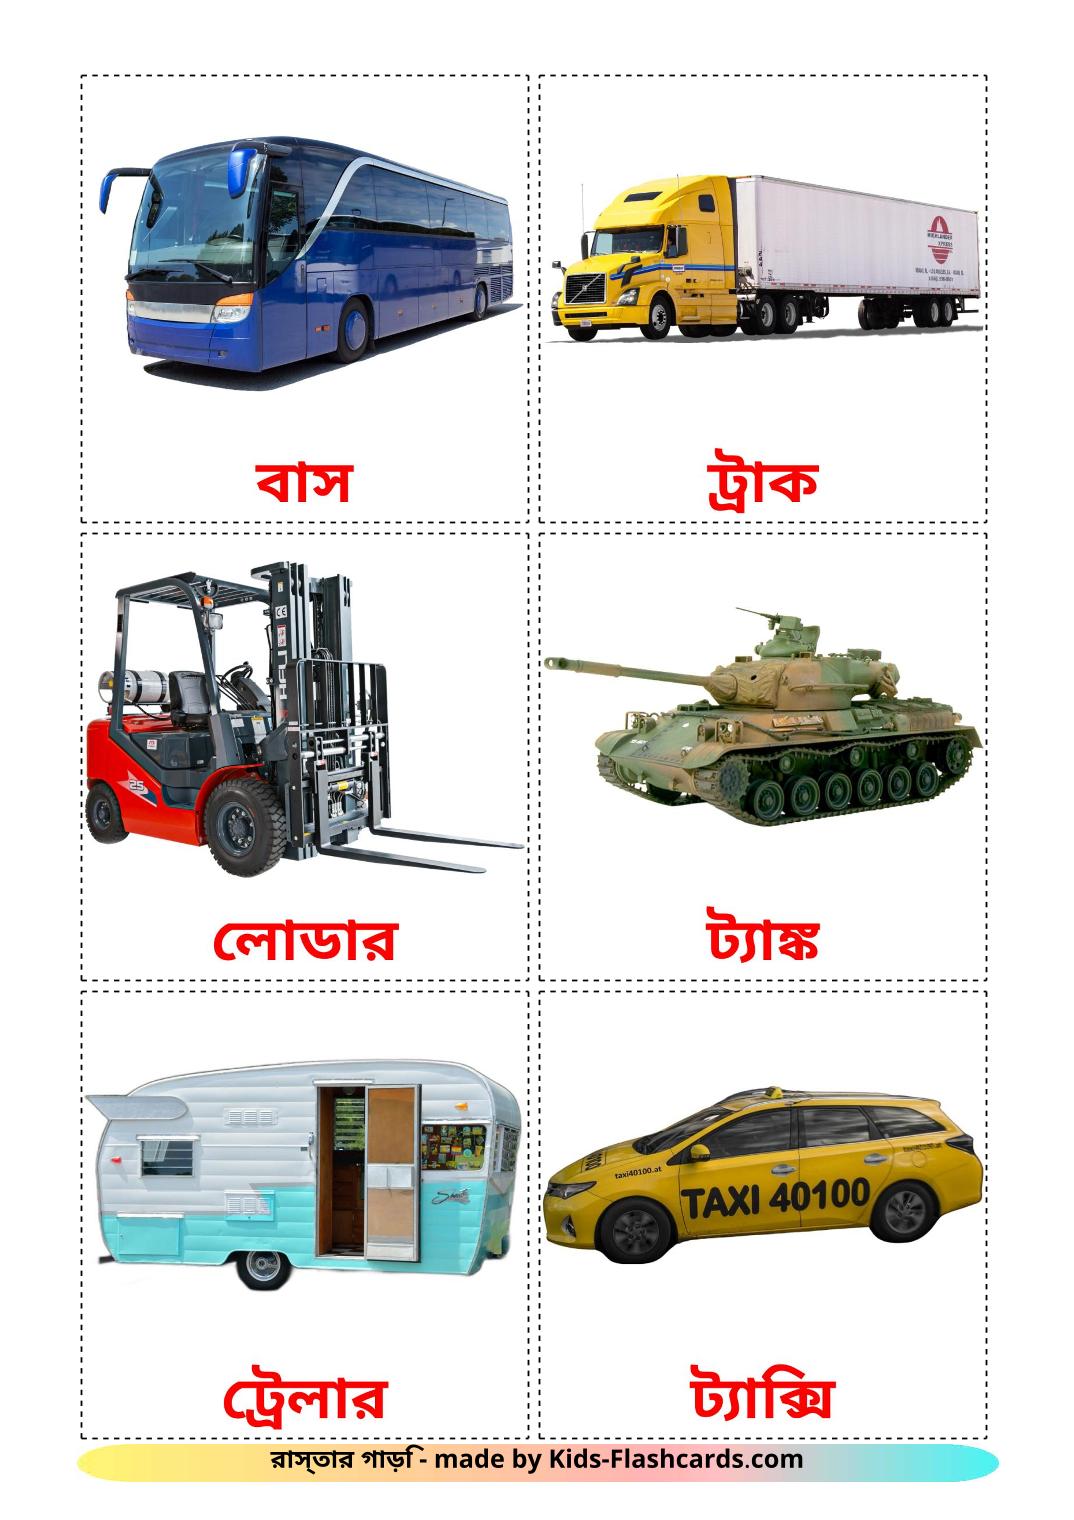 Transporte terrestre - 27 Flashcards bengalies gratuitos para impressão